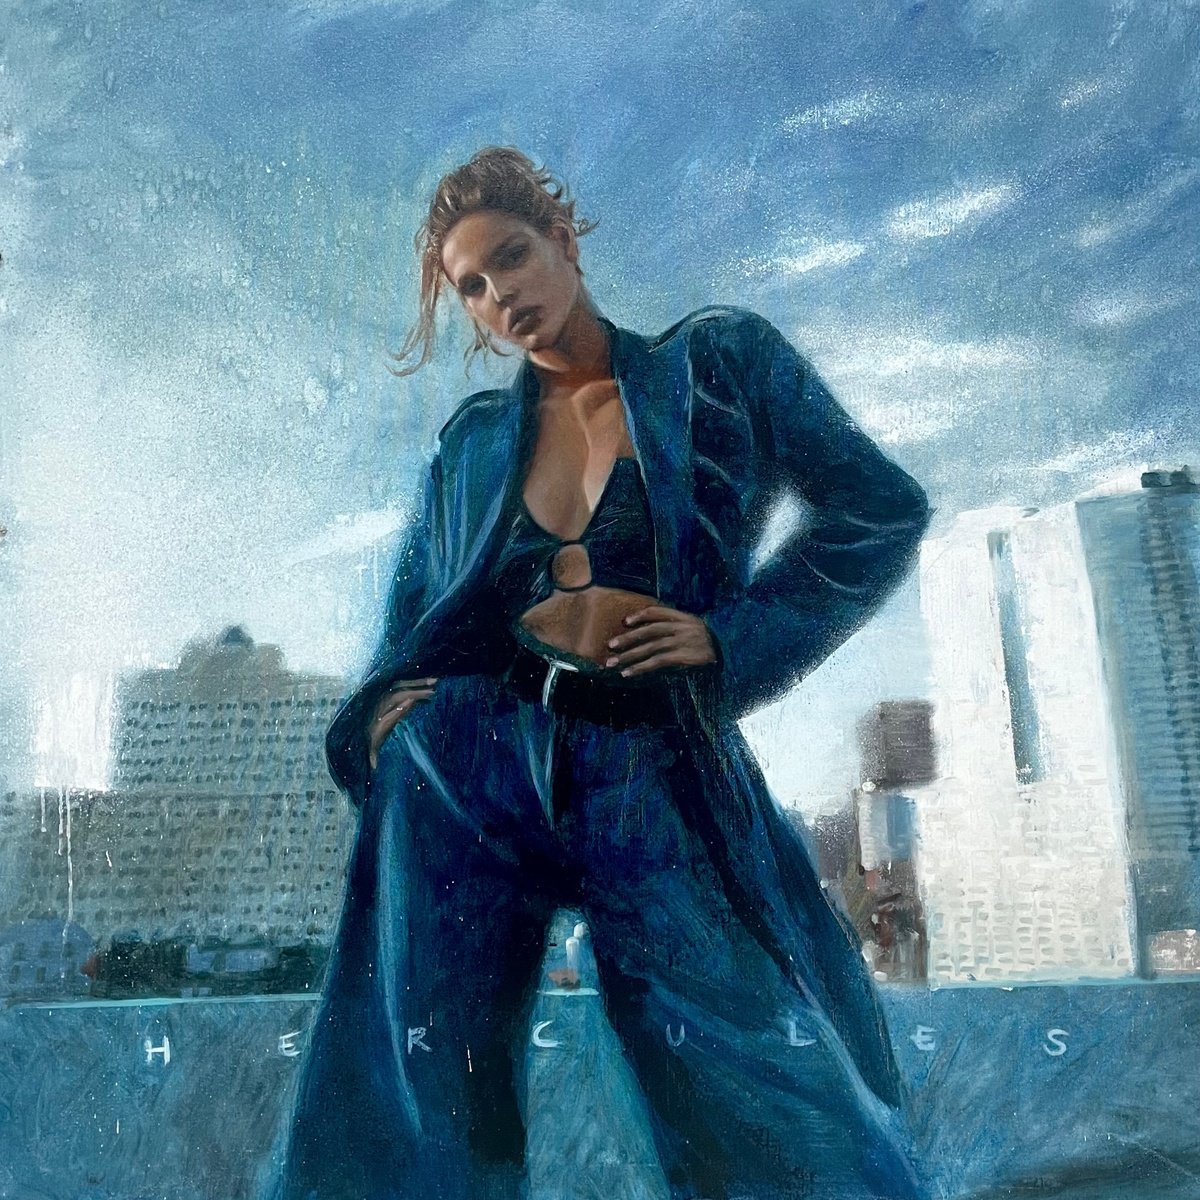 Boss babe, woman in blue suit city background by Renske Karlien Hercules